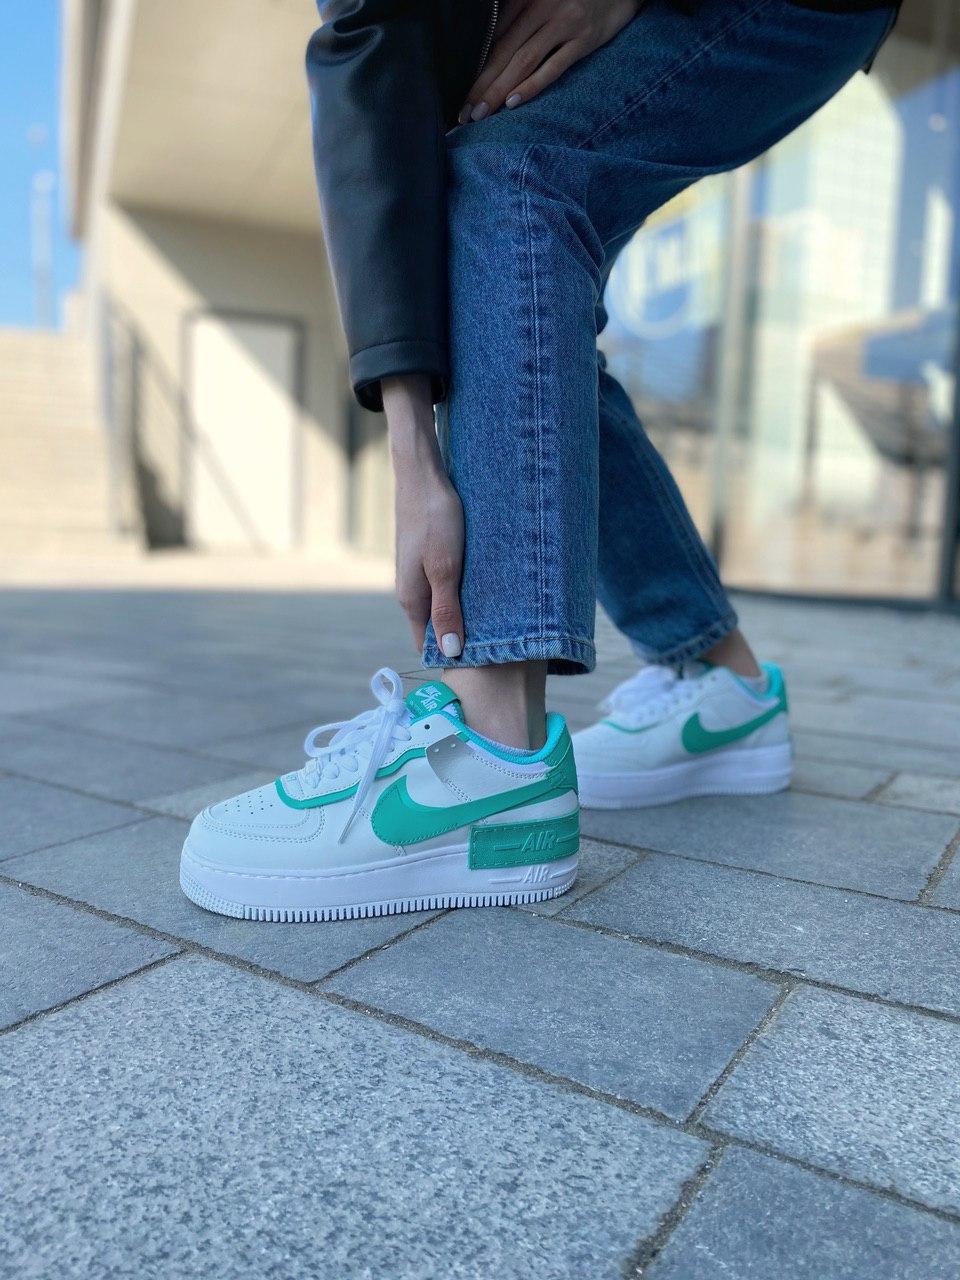 Жіночі кросівки Nike Air Force Shadow White Green | Найк Аір Форс Шадов Білі Зелені